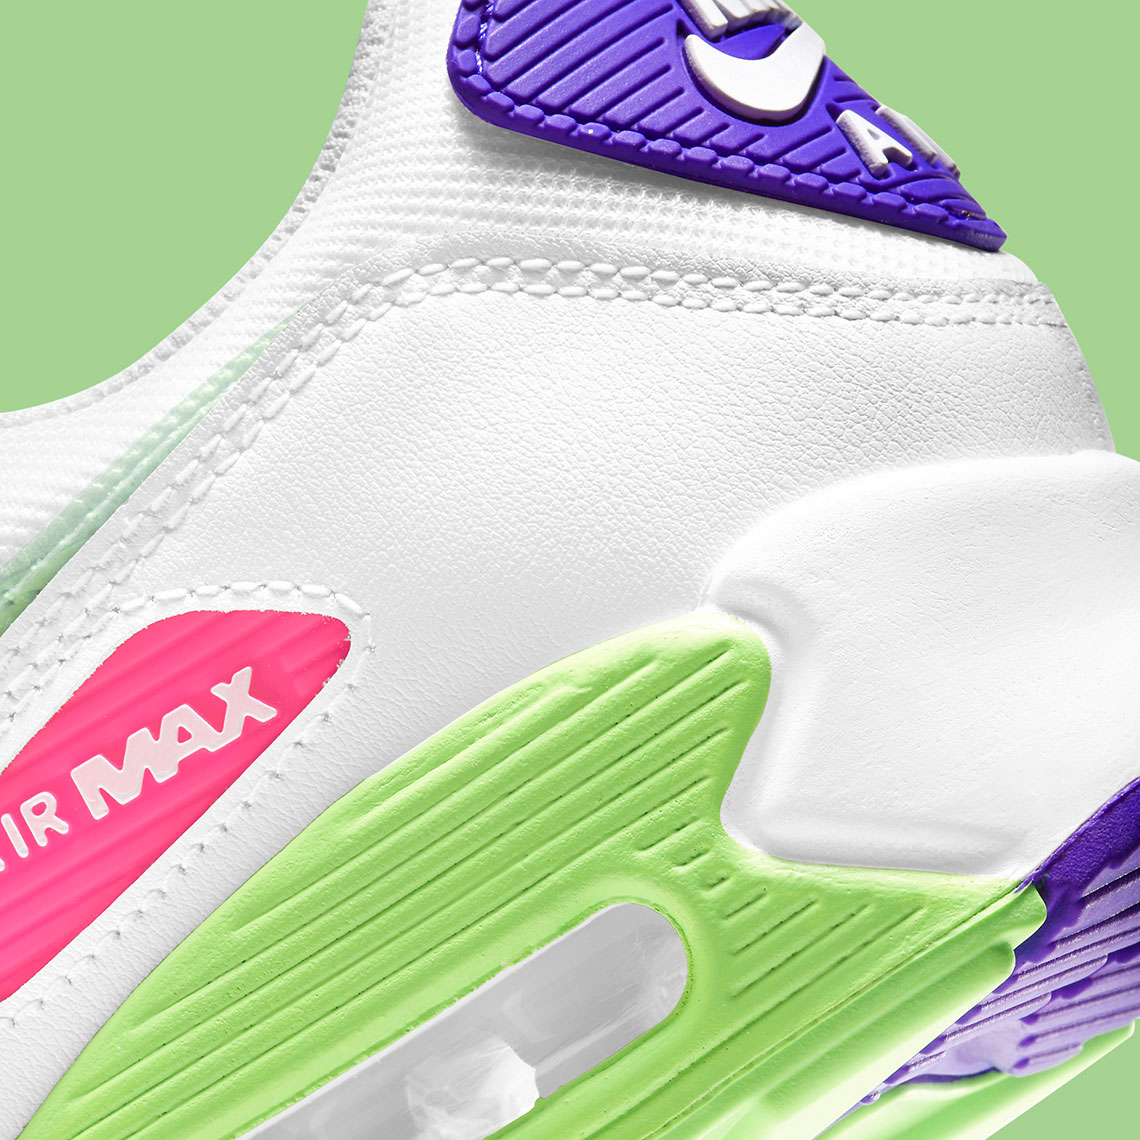 Nike Air Max 90 Bright Neon Dh0250 100 8